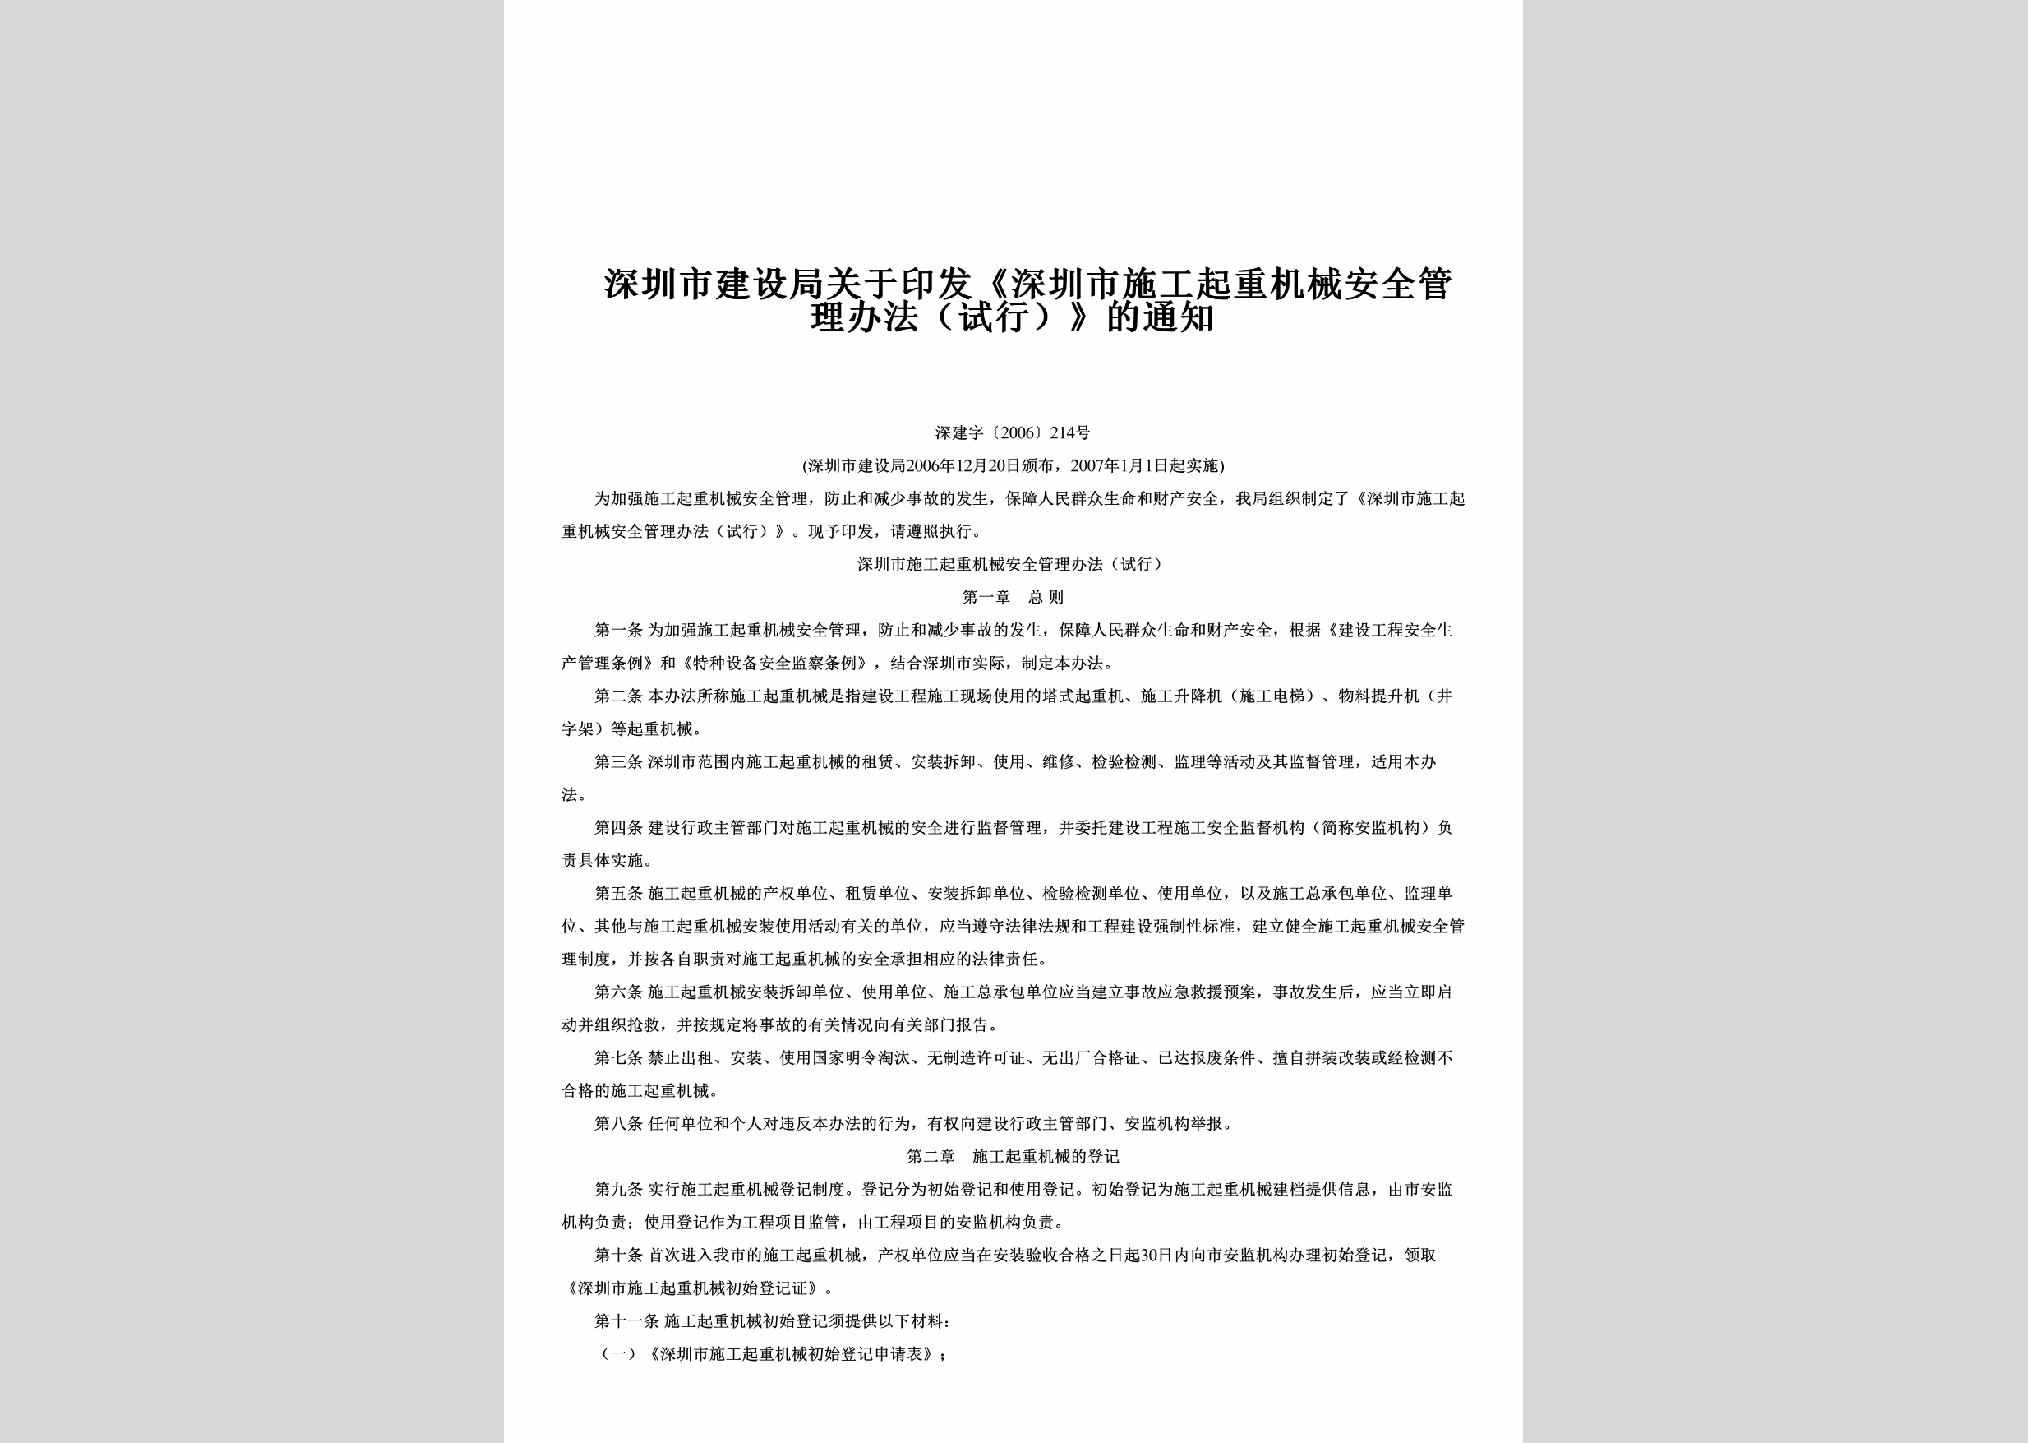 深建字[2006]214号：关于印发《深圳市施工起重机械安全管理办法（试行）》的通知